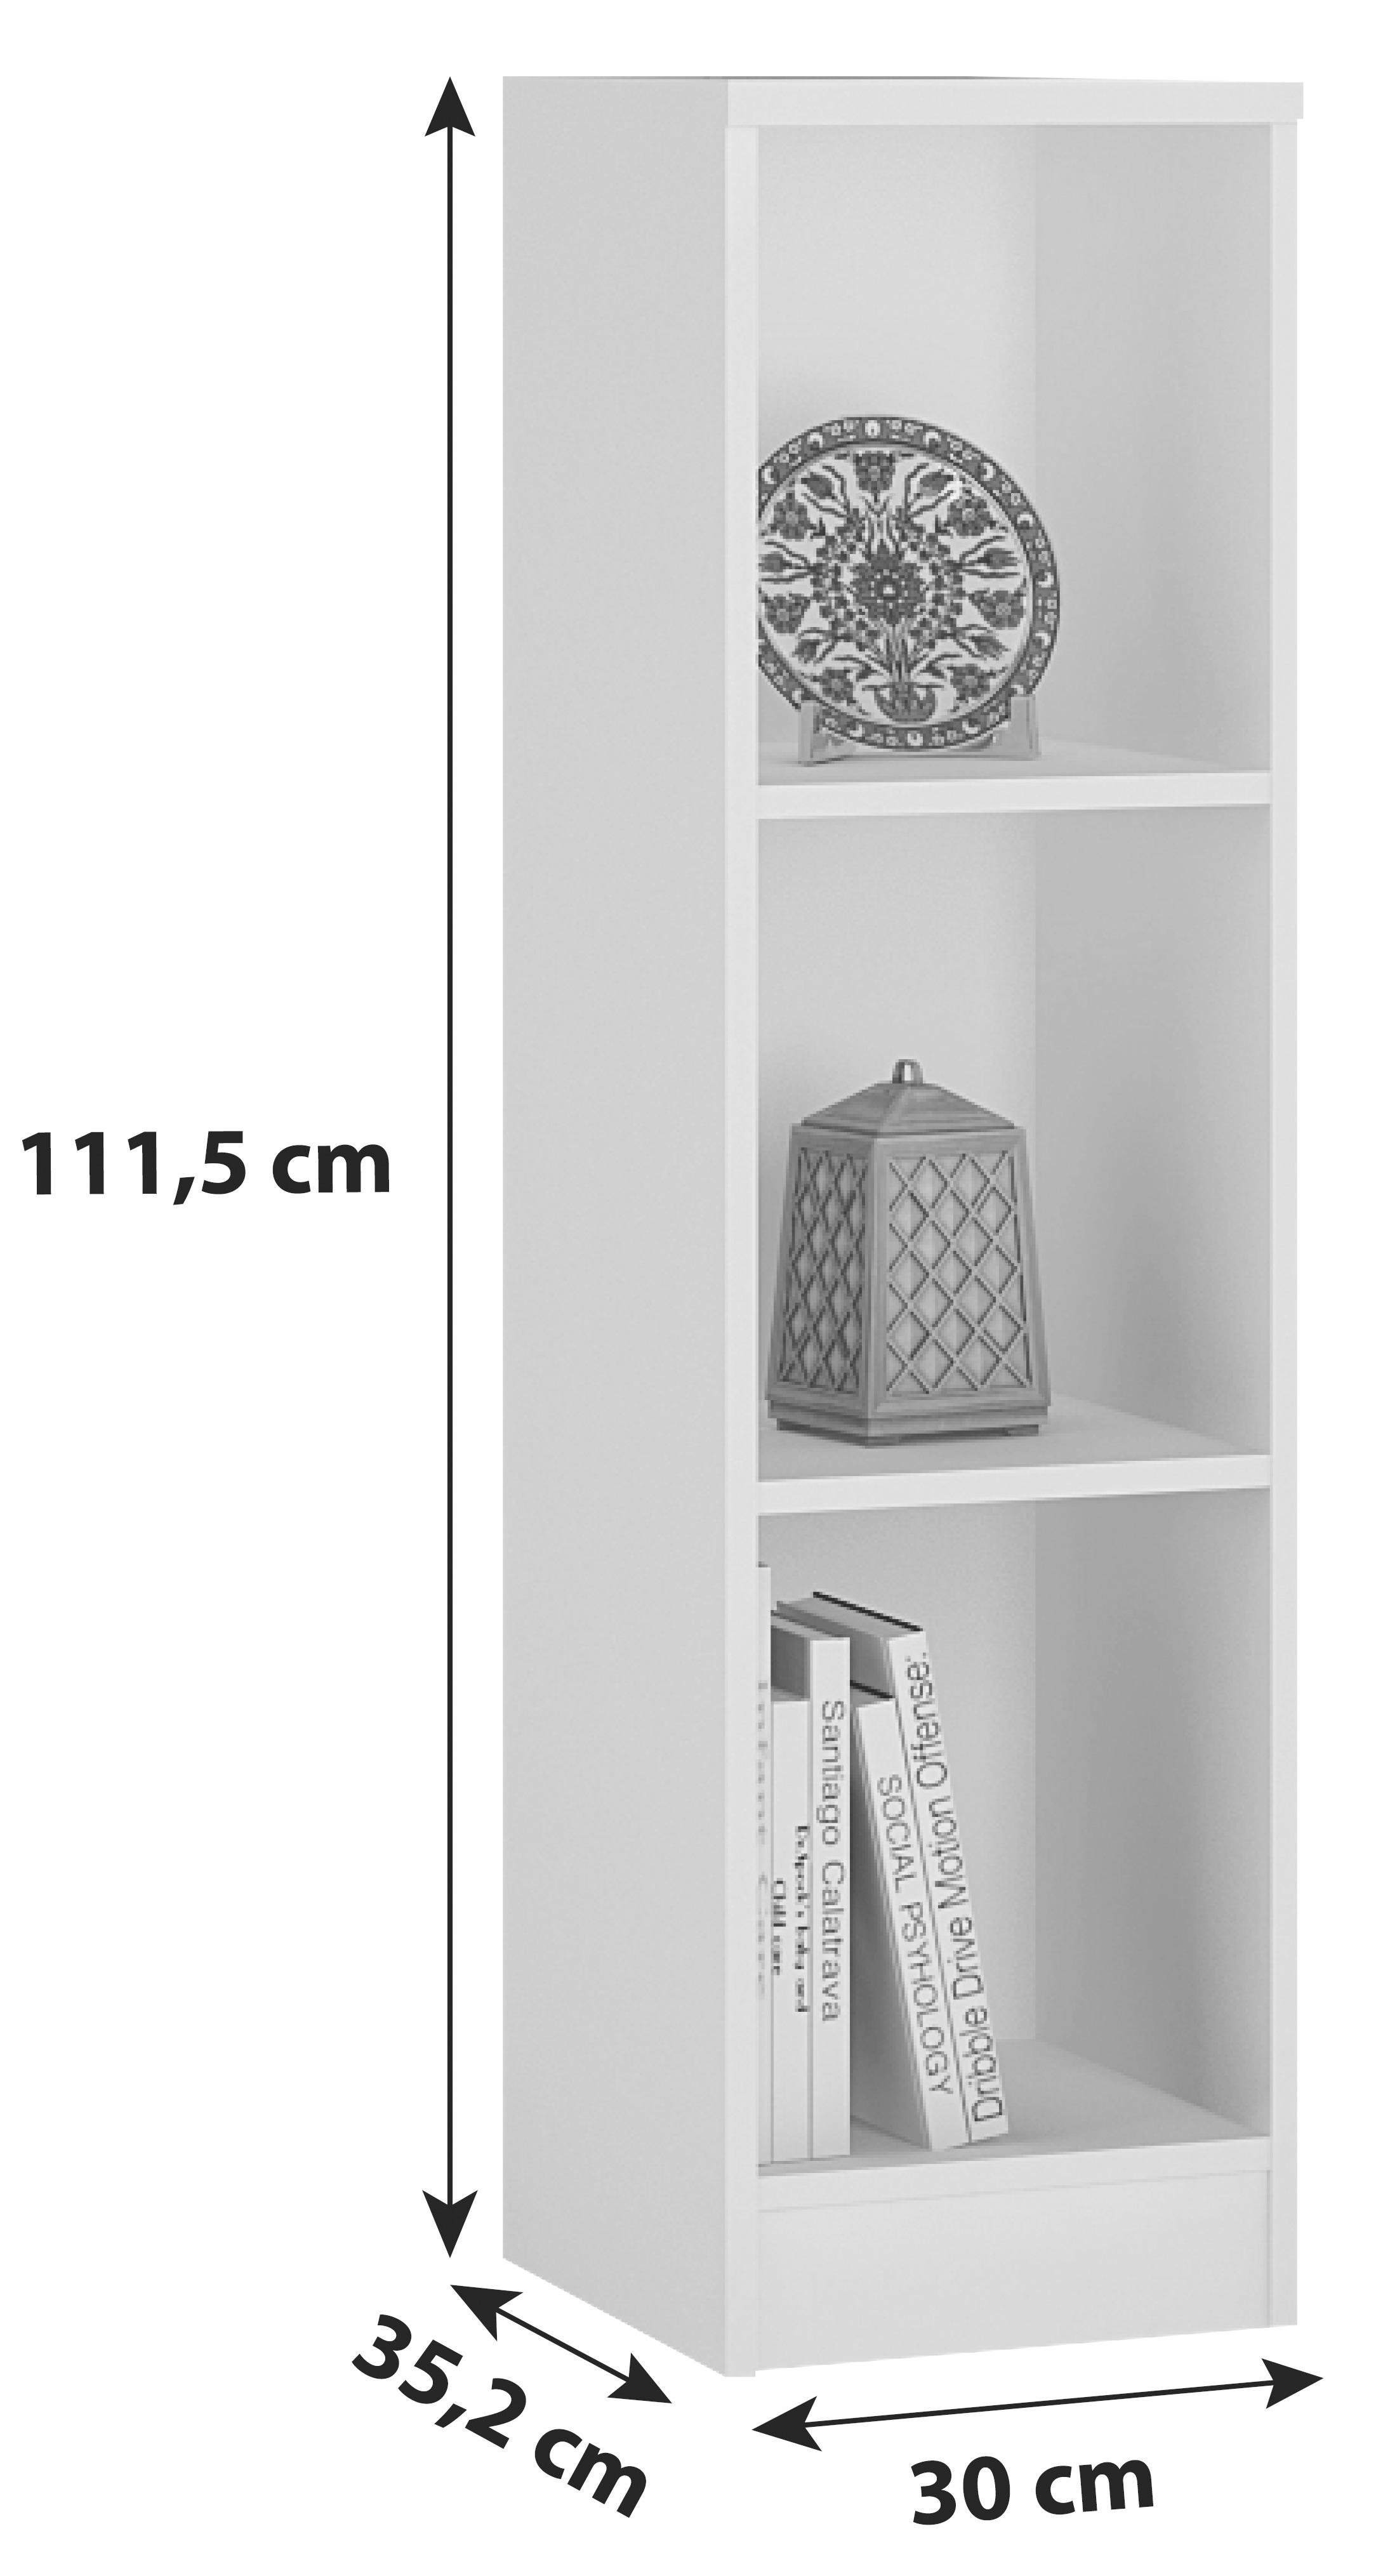 Regál 4-You Yur05 - bílá, Moderní, dřevo (30/111,5/35,2cm)